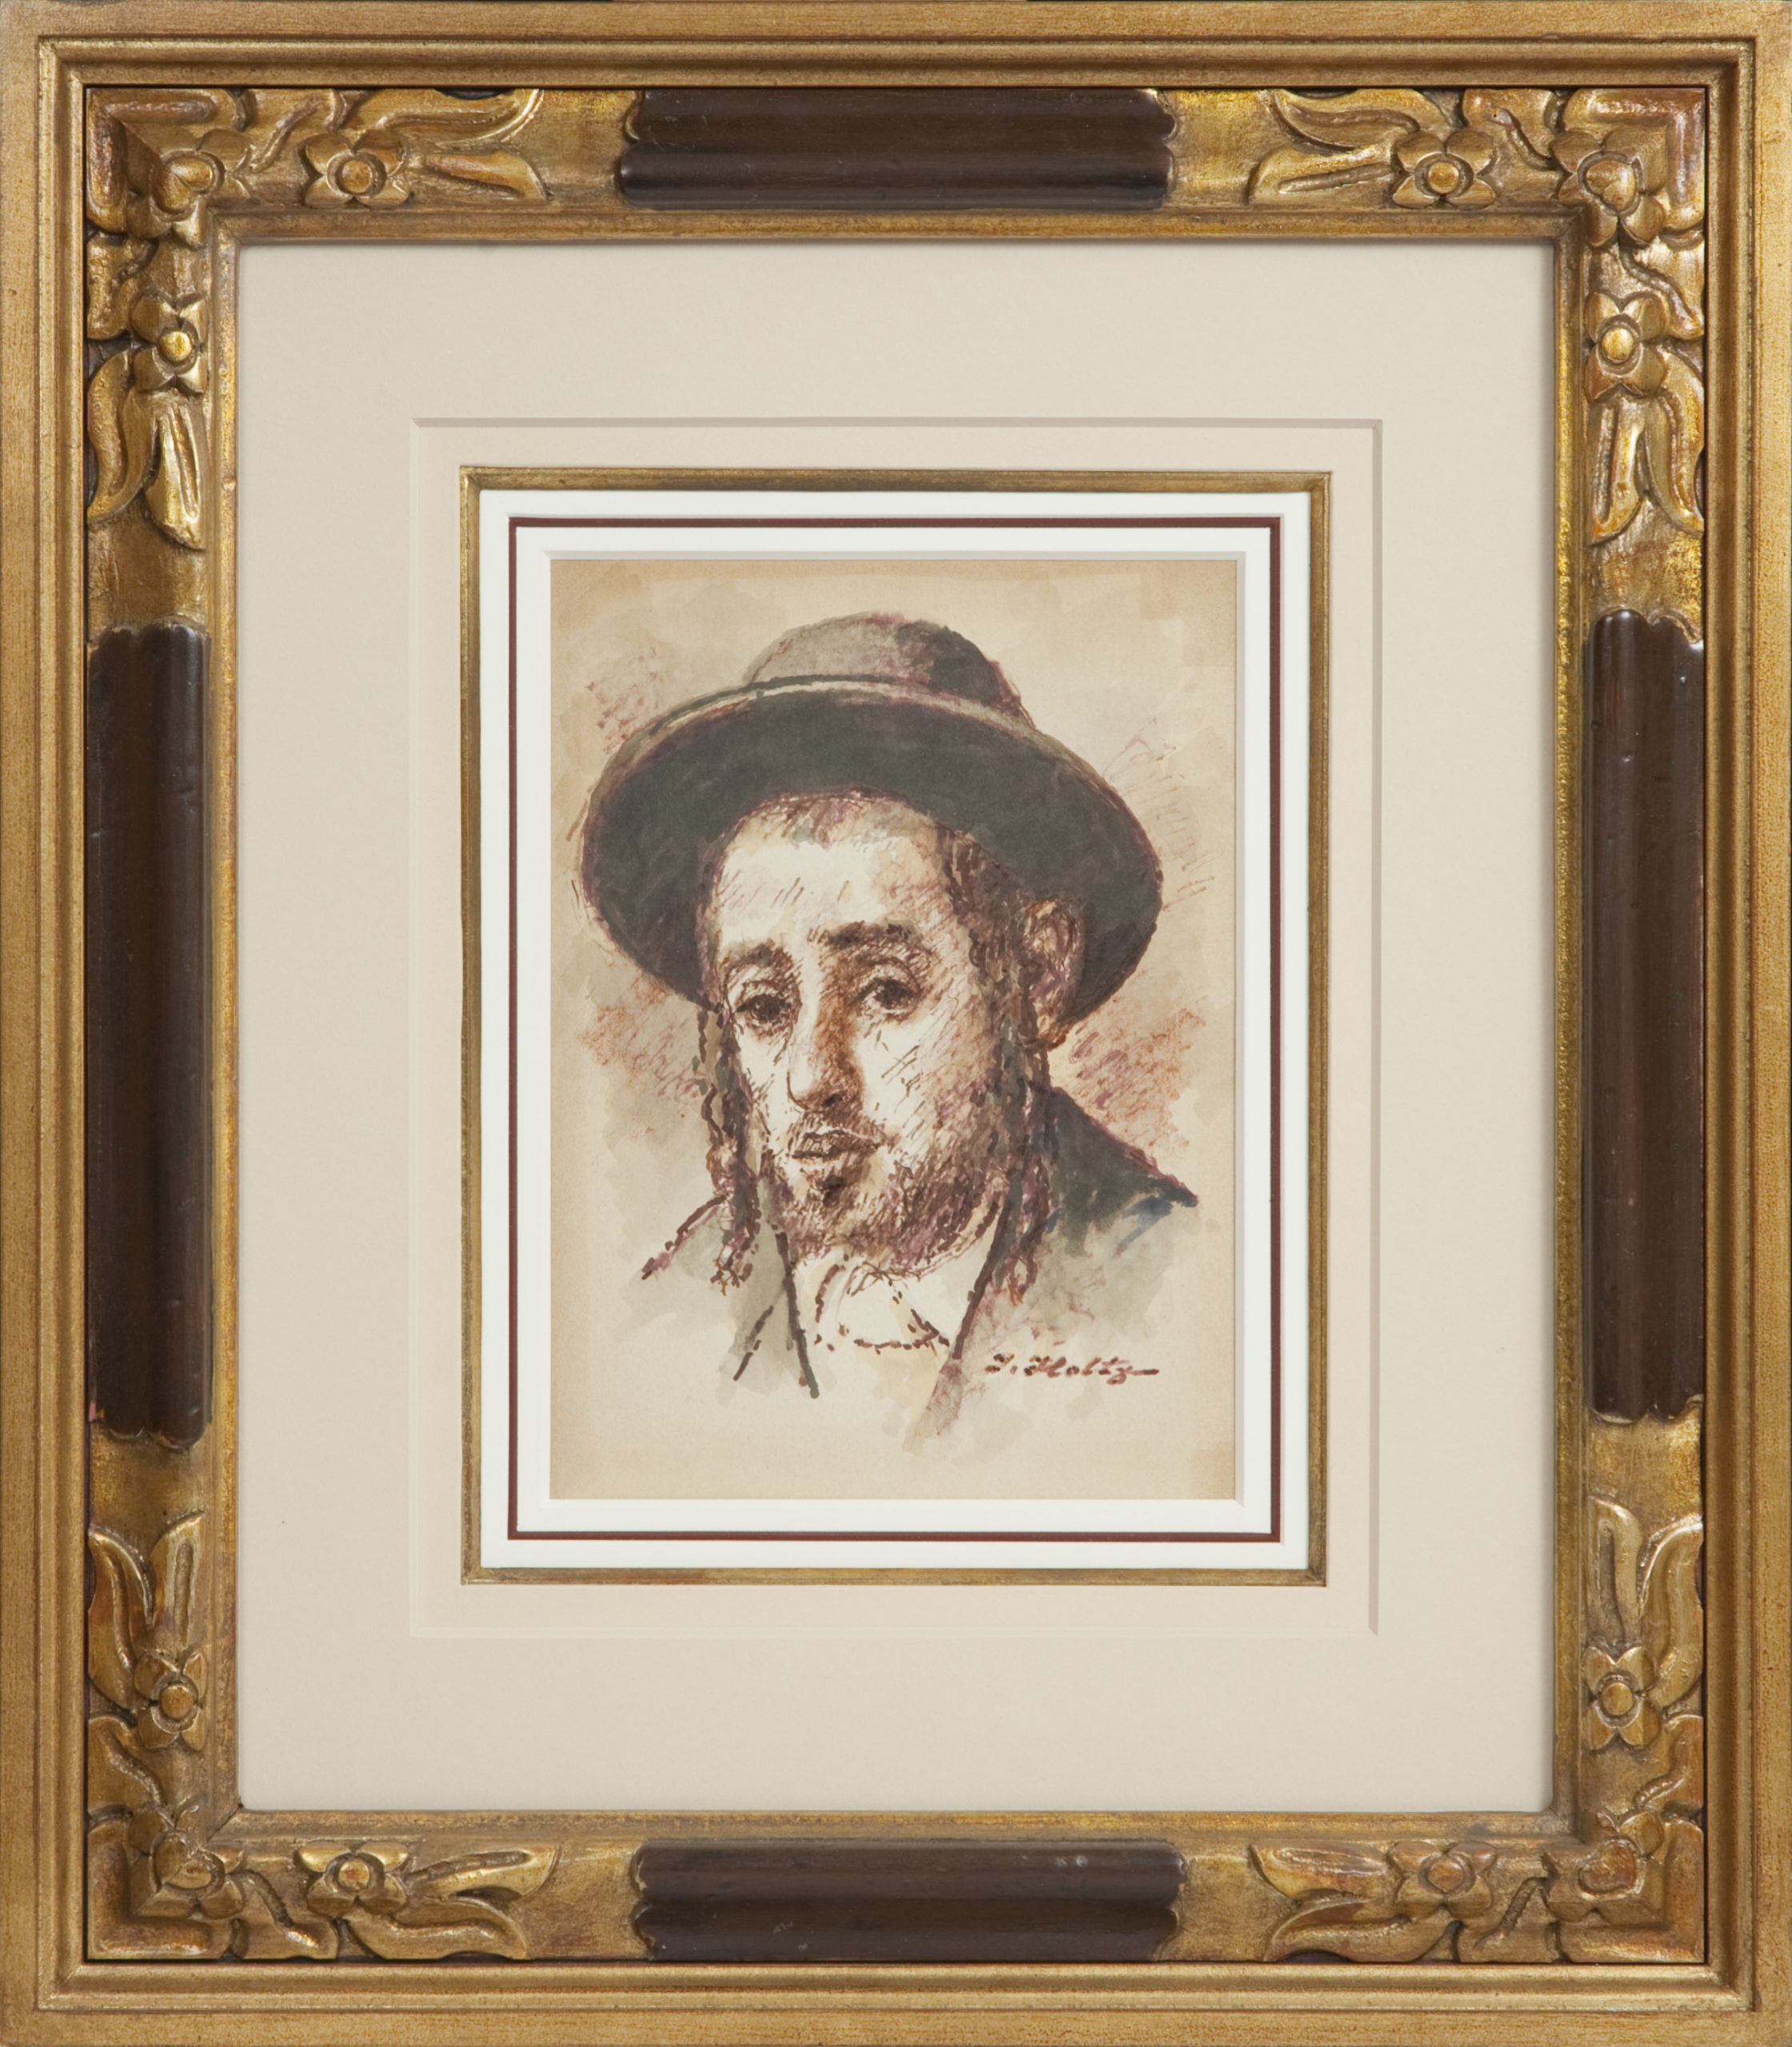 173 Yeshiva Student 1971 - Marker - 8 x 10.5 - Frame: 19 x 22 x 2